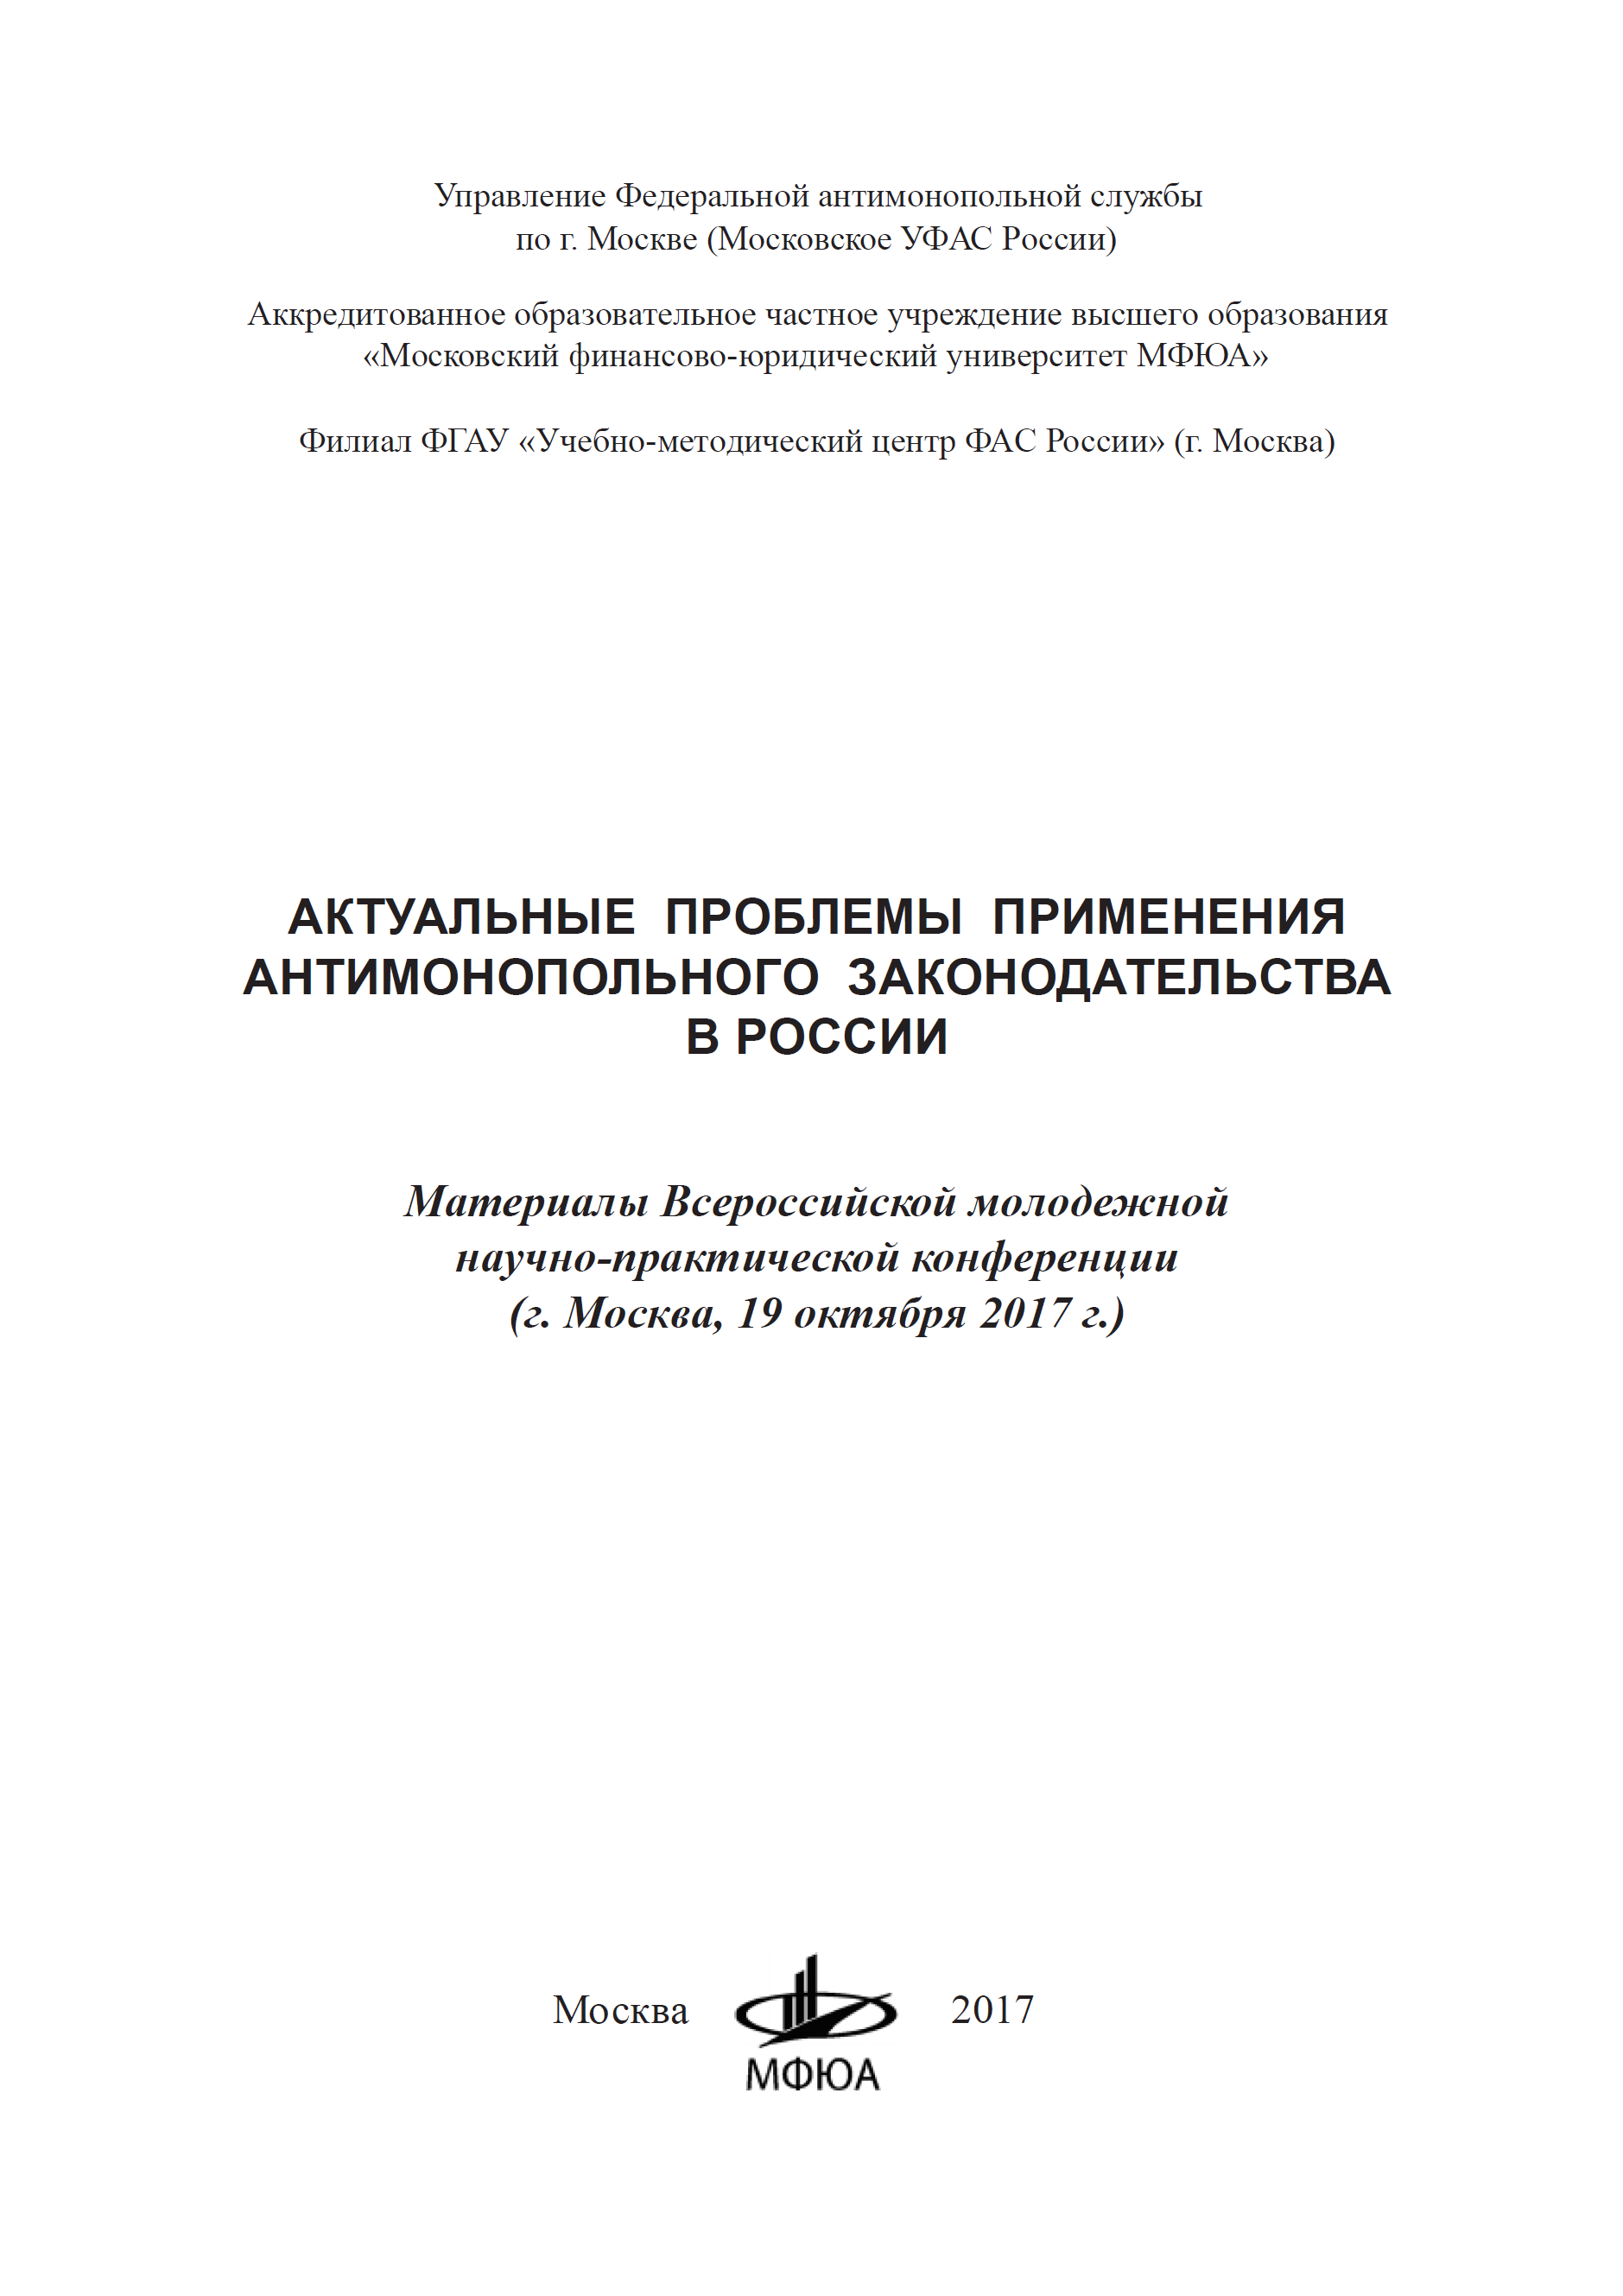 Актуальные проблемы применения антимонопольного законодательства в России